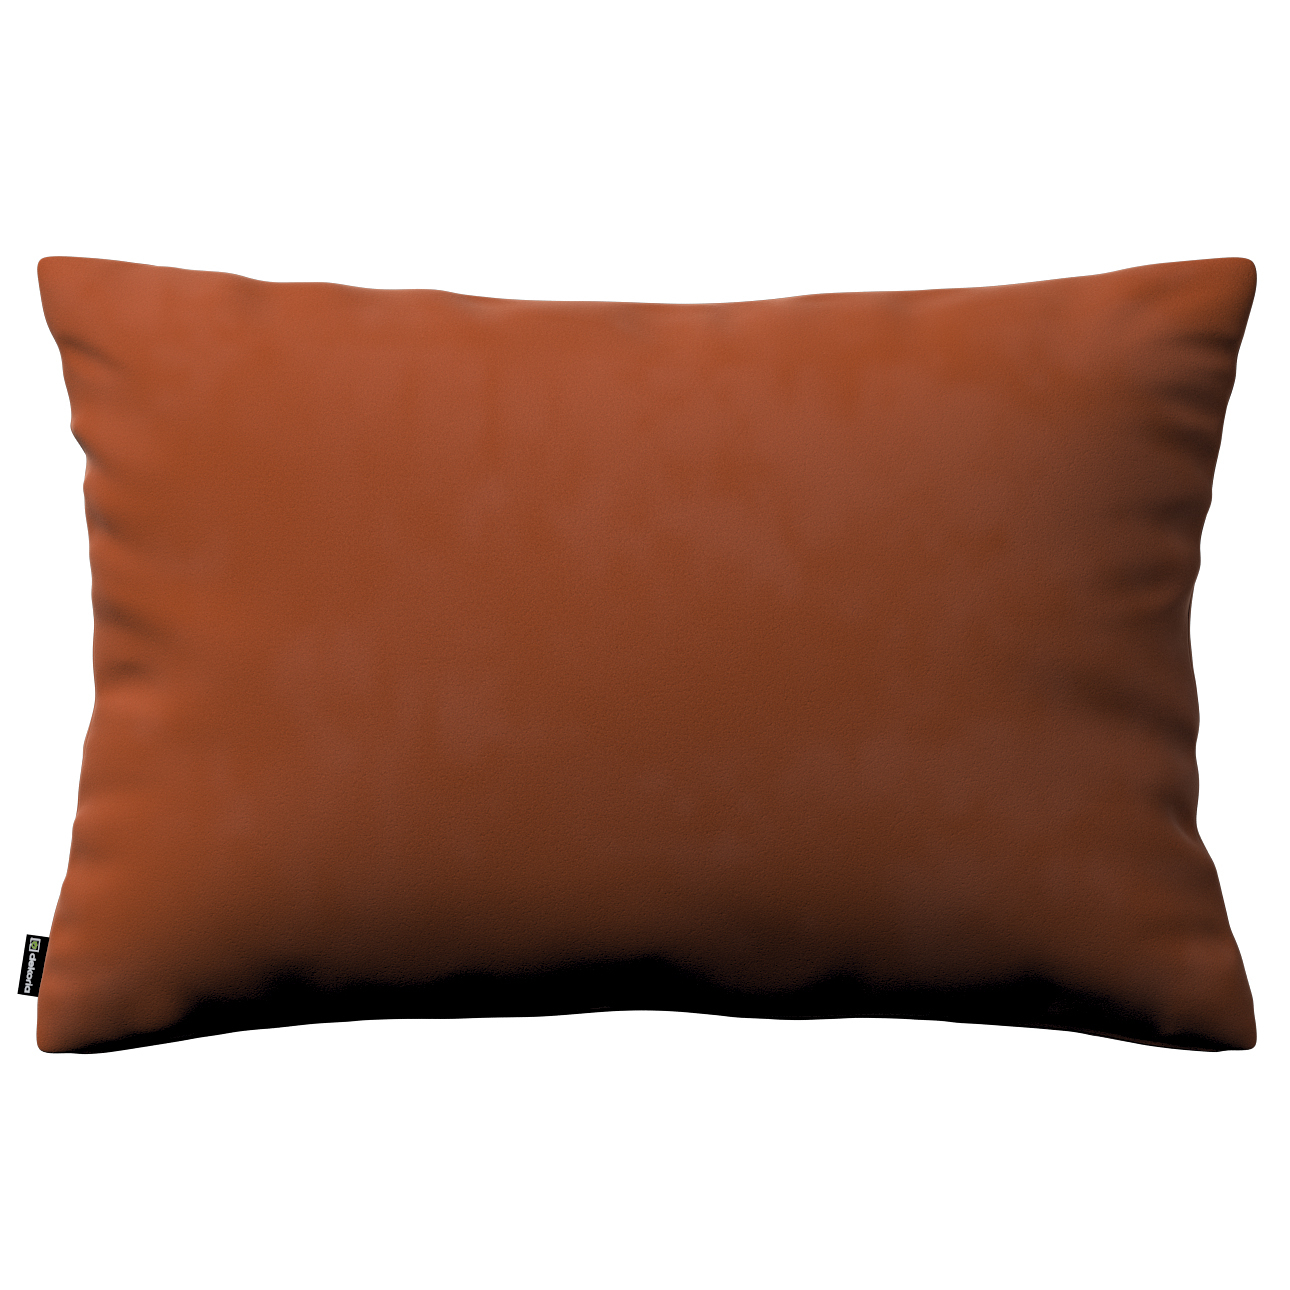 Kissenhülle Kinga rechteckig, braun-karamell, 47 x 28 cm, Velvet (704-33) günstig online kaufen